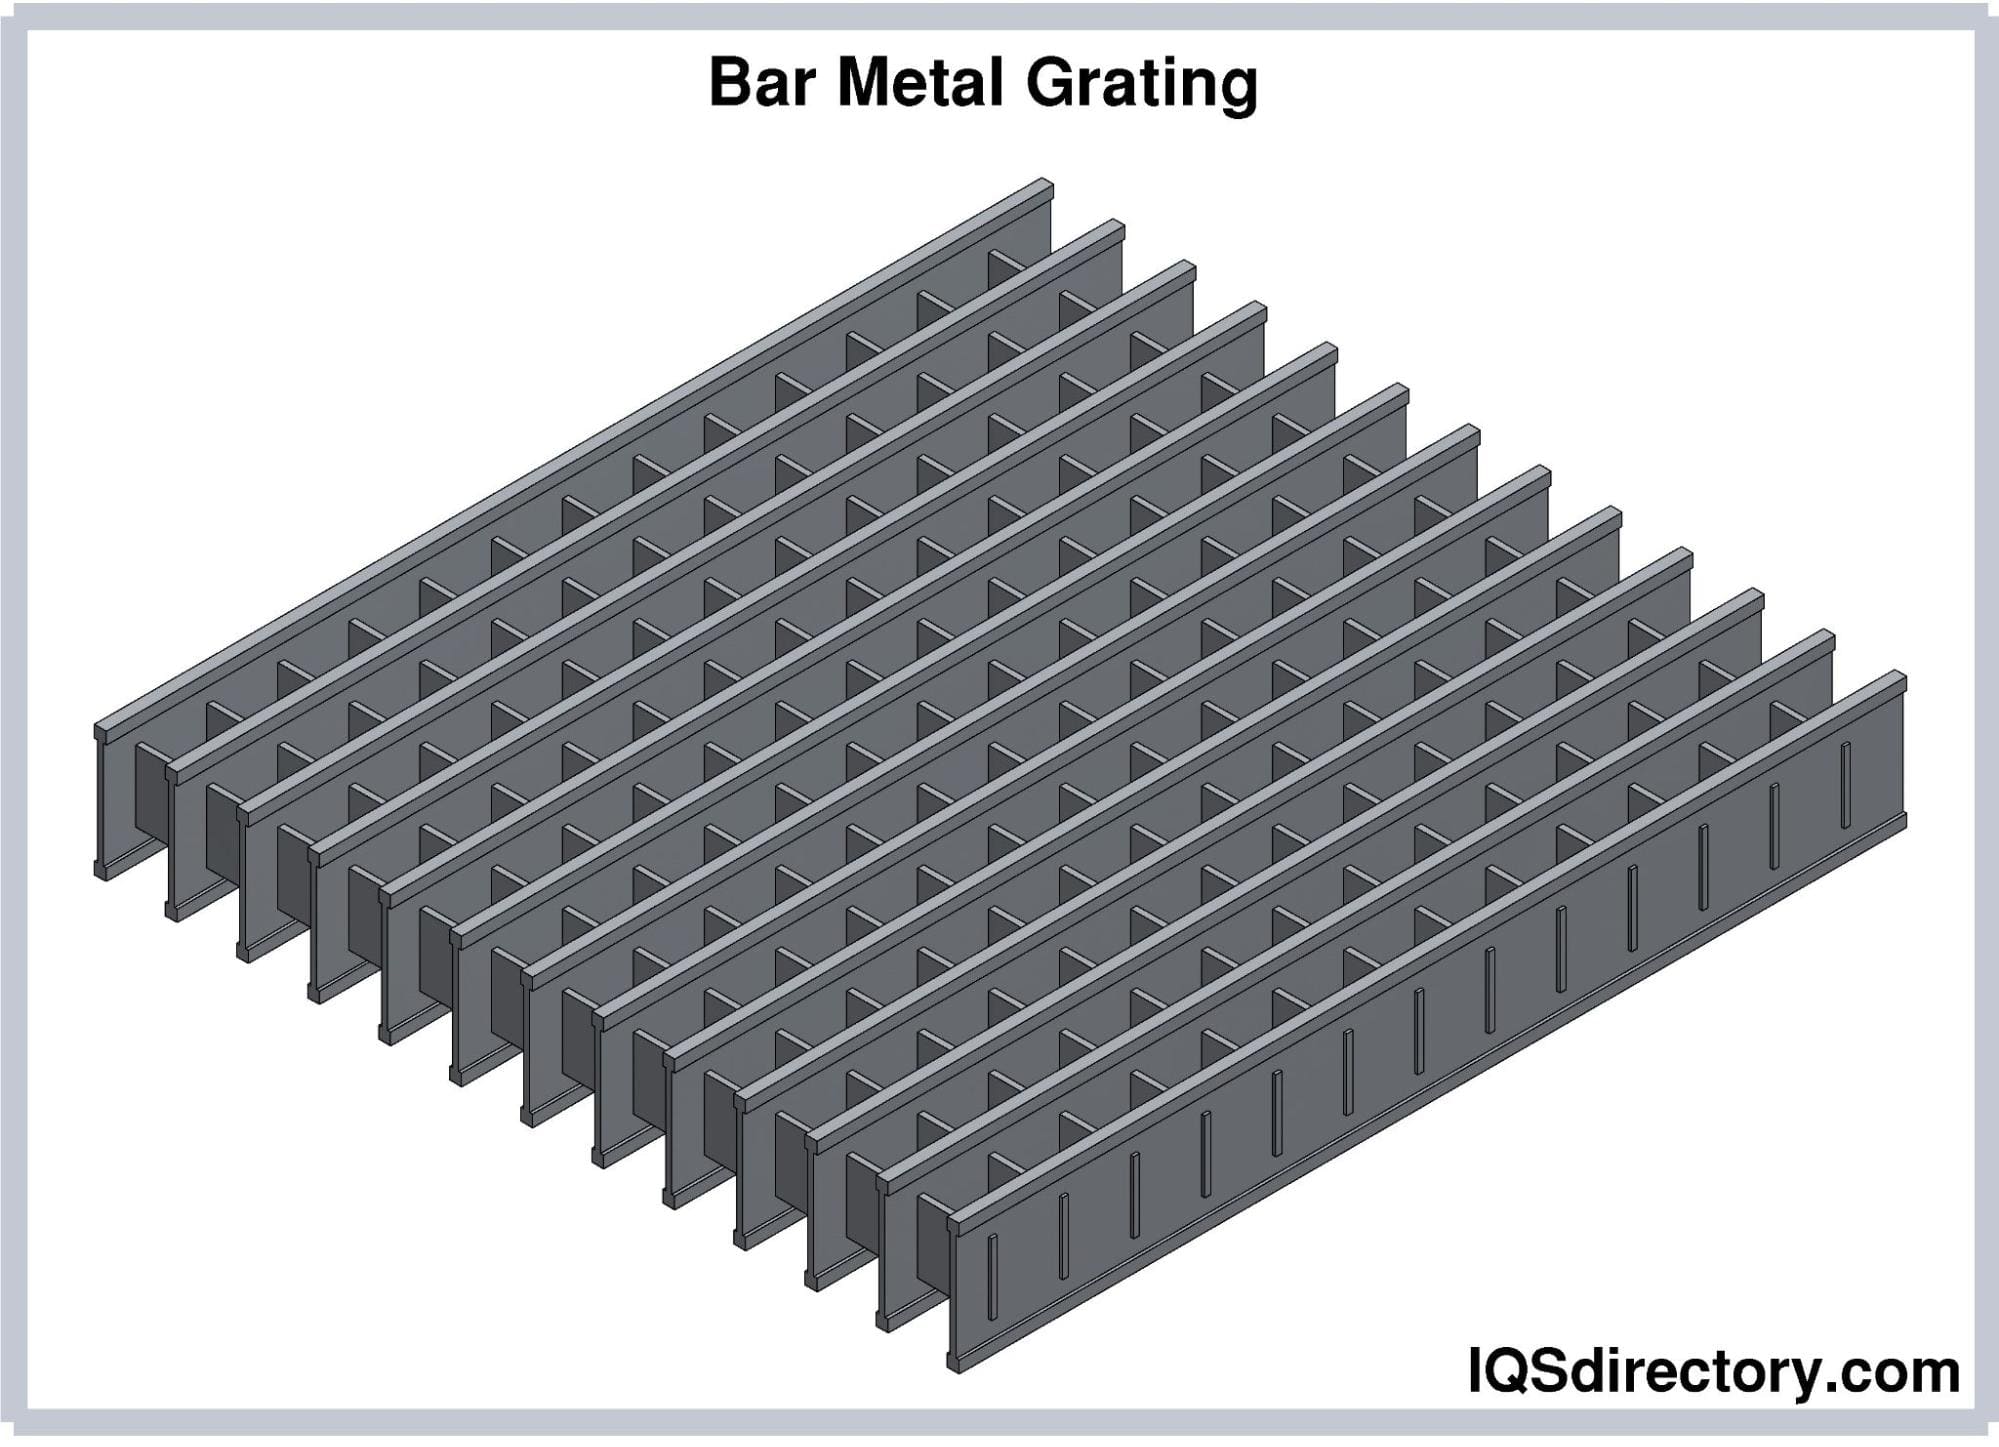 Bar Metal Grating